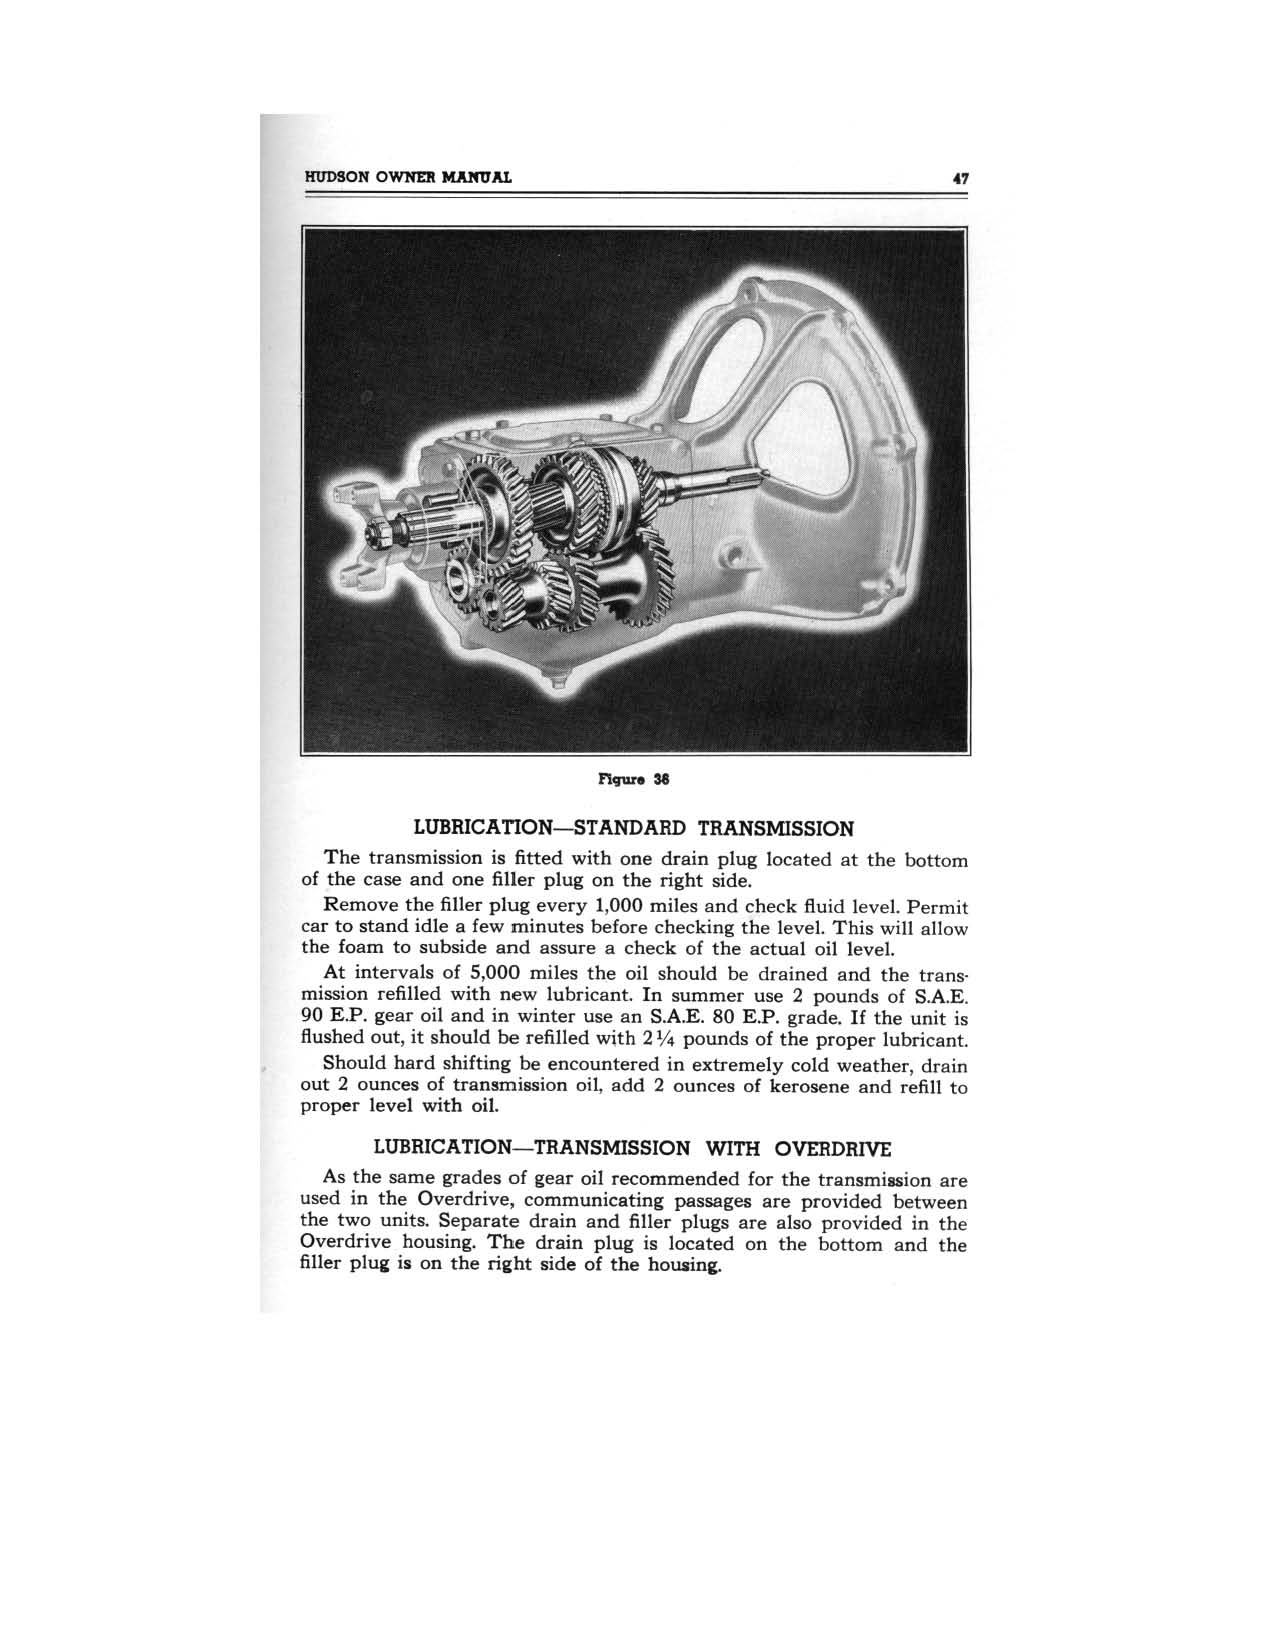 1949 Hudson Owners Manual-49